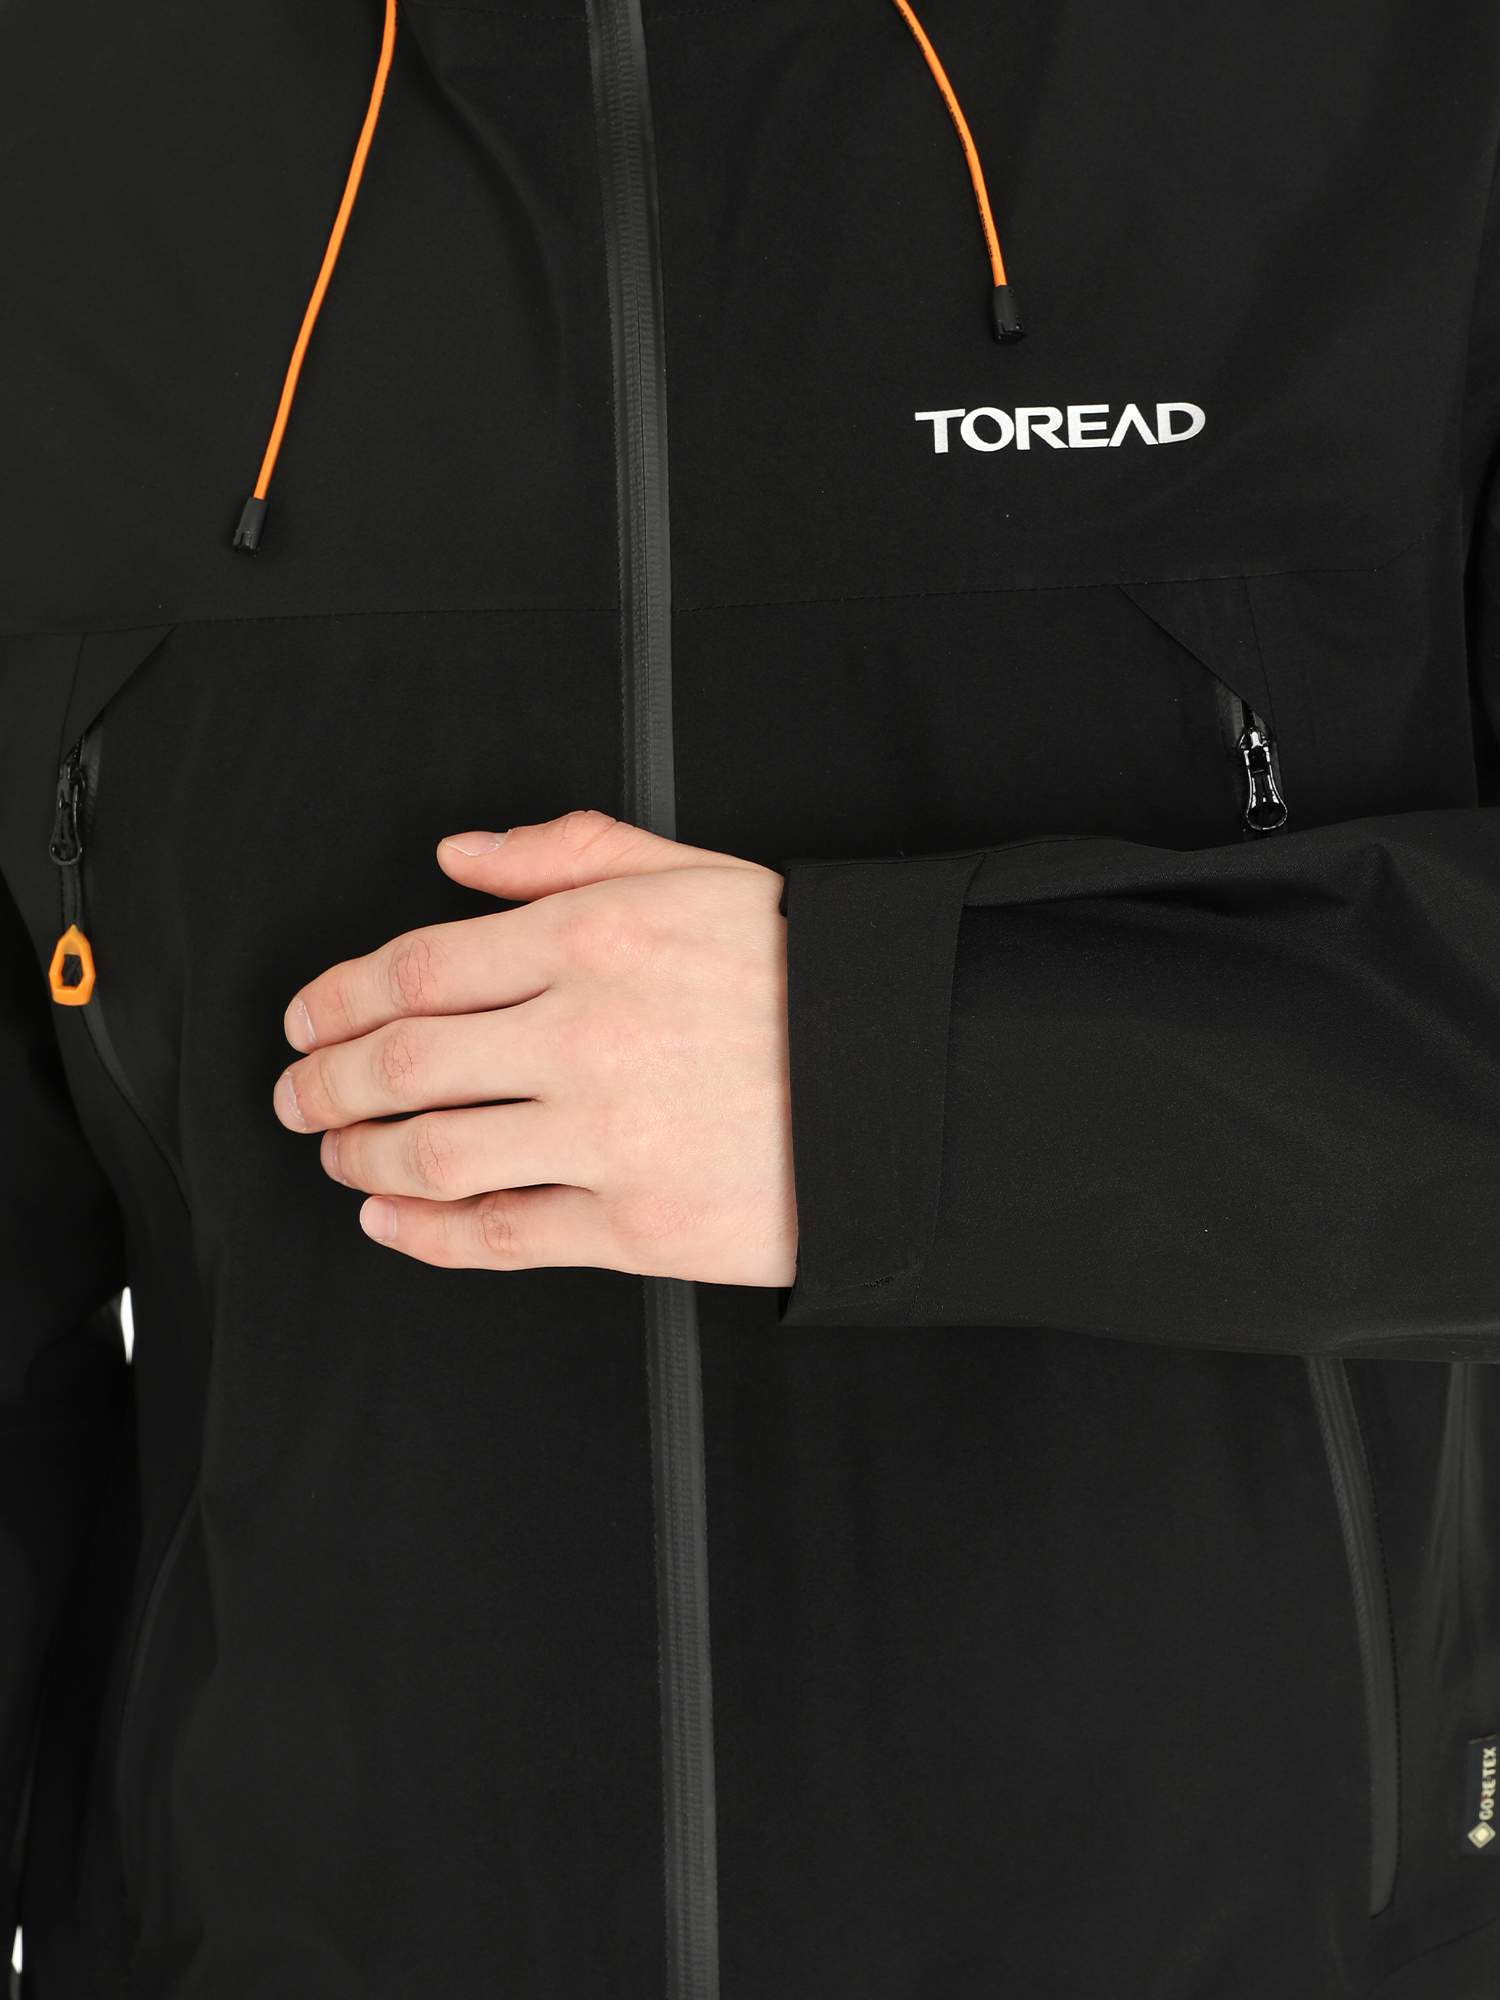 Спортивная куртка мужская Toread Mens Gore-Tex Jacket черная XL - купить вМоскве, цены на Мегамаркет